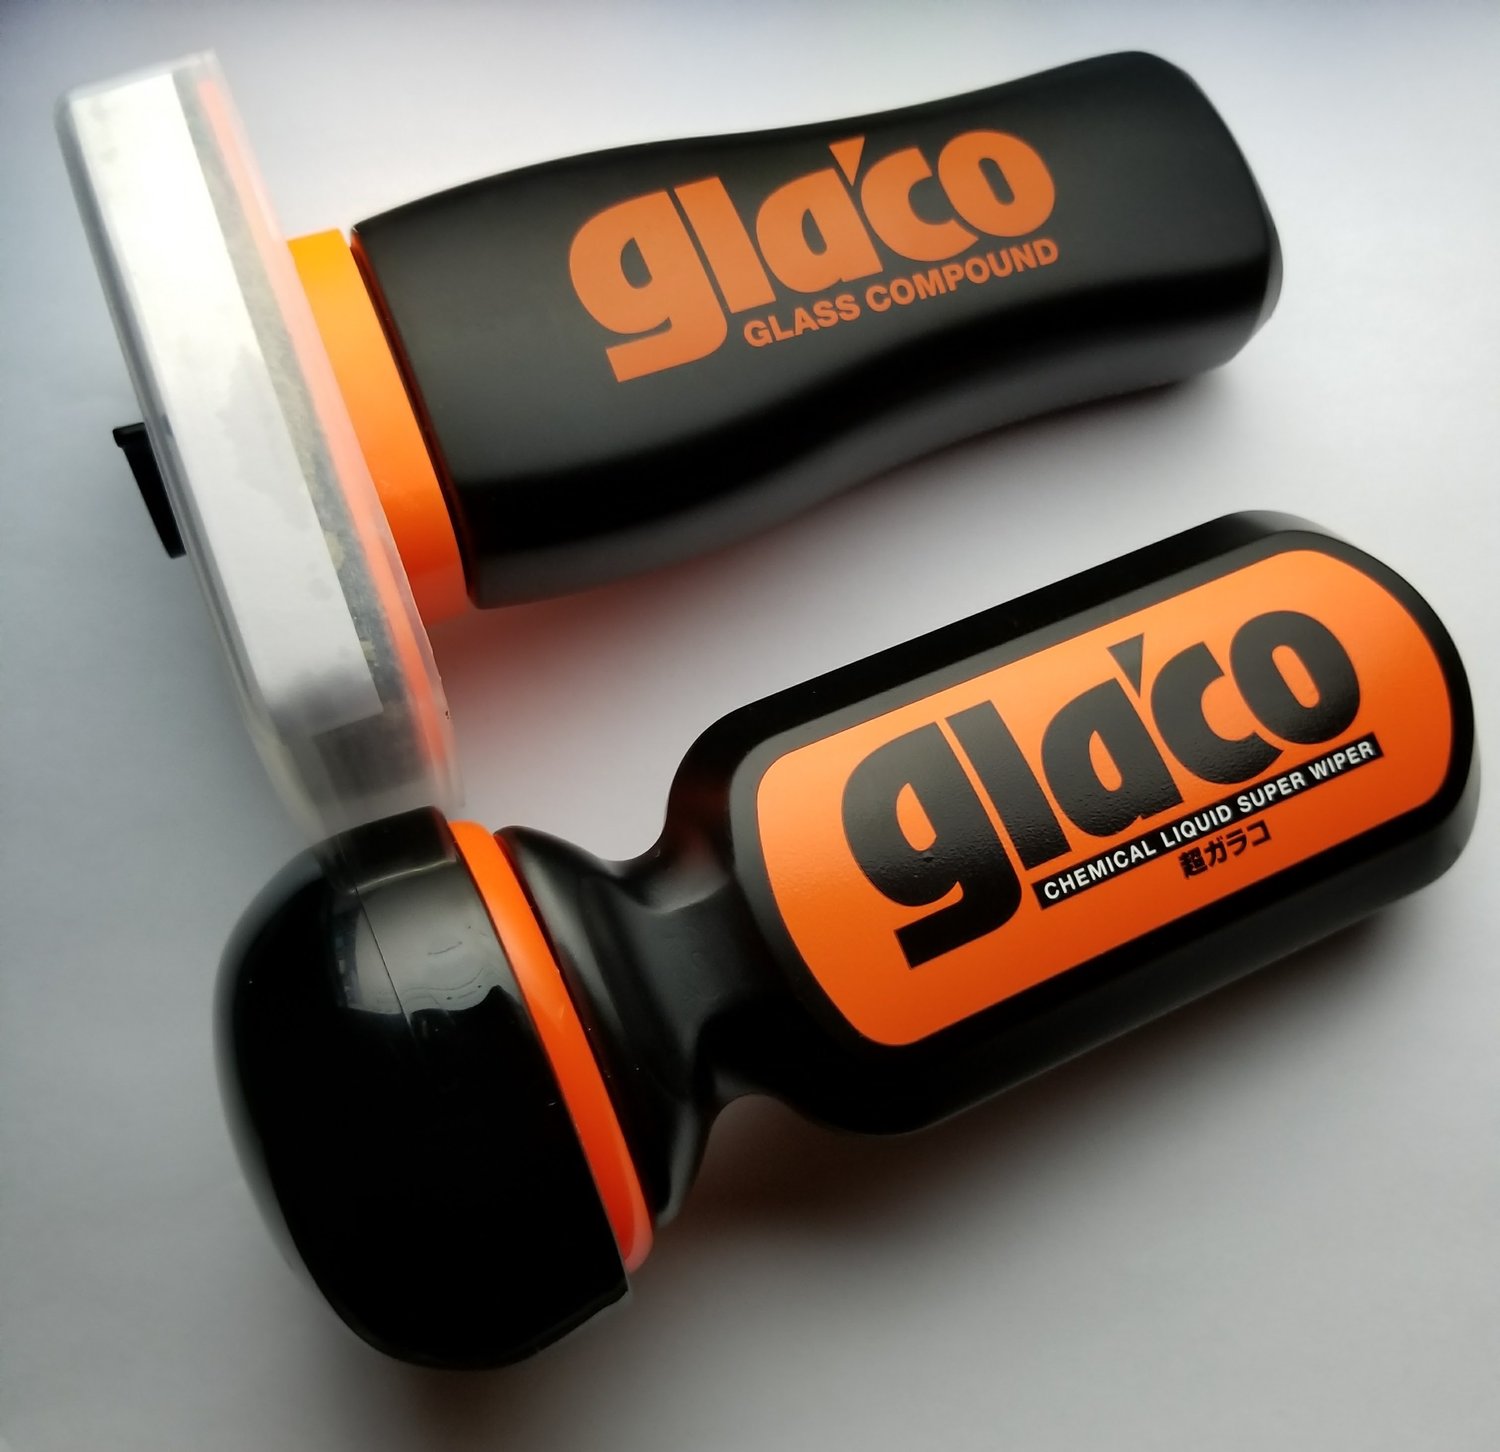 Glaco - Soft99